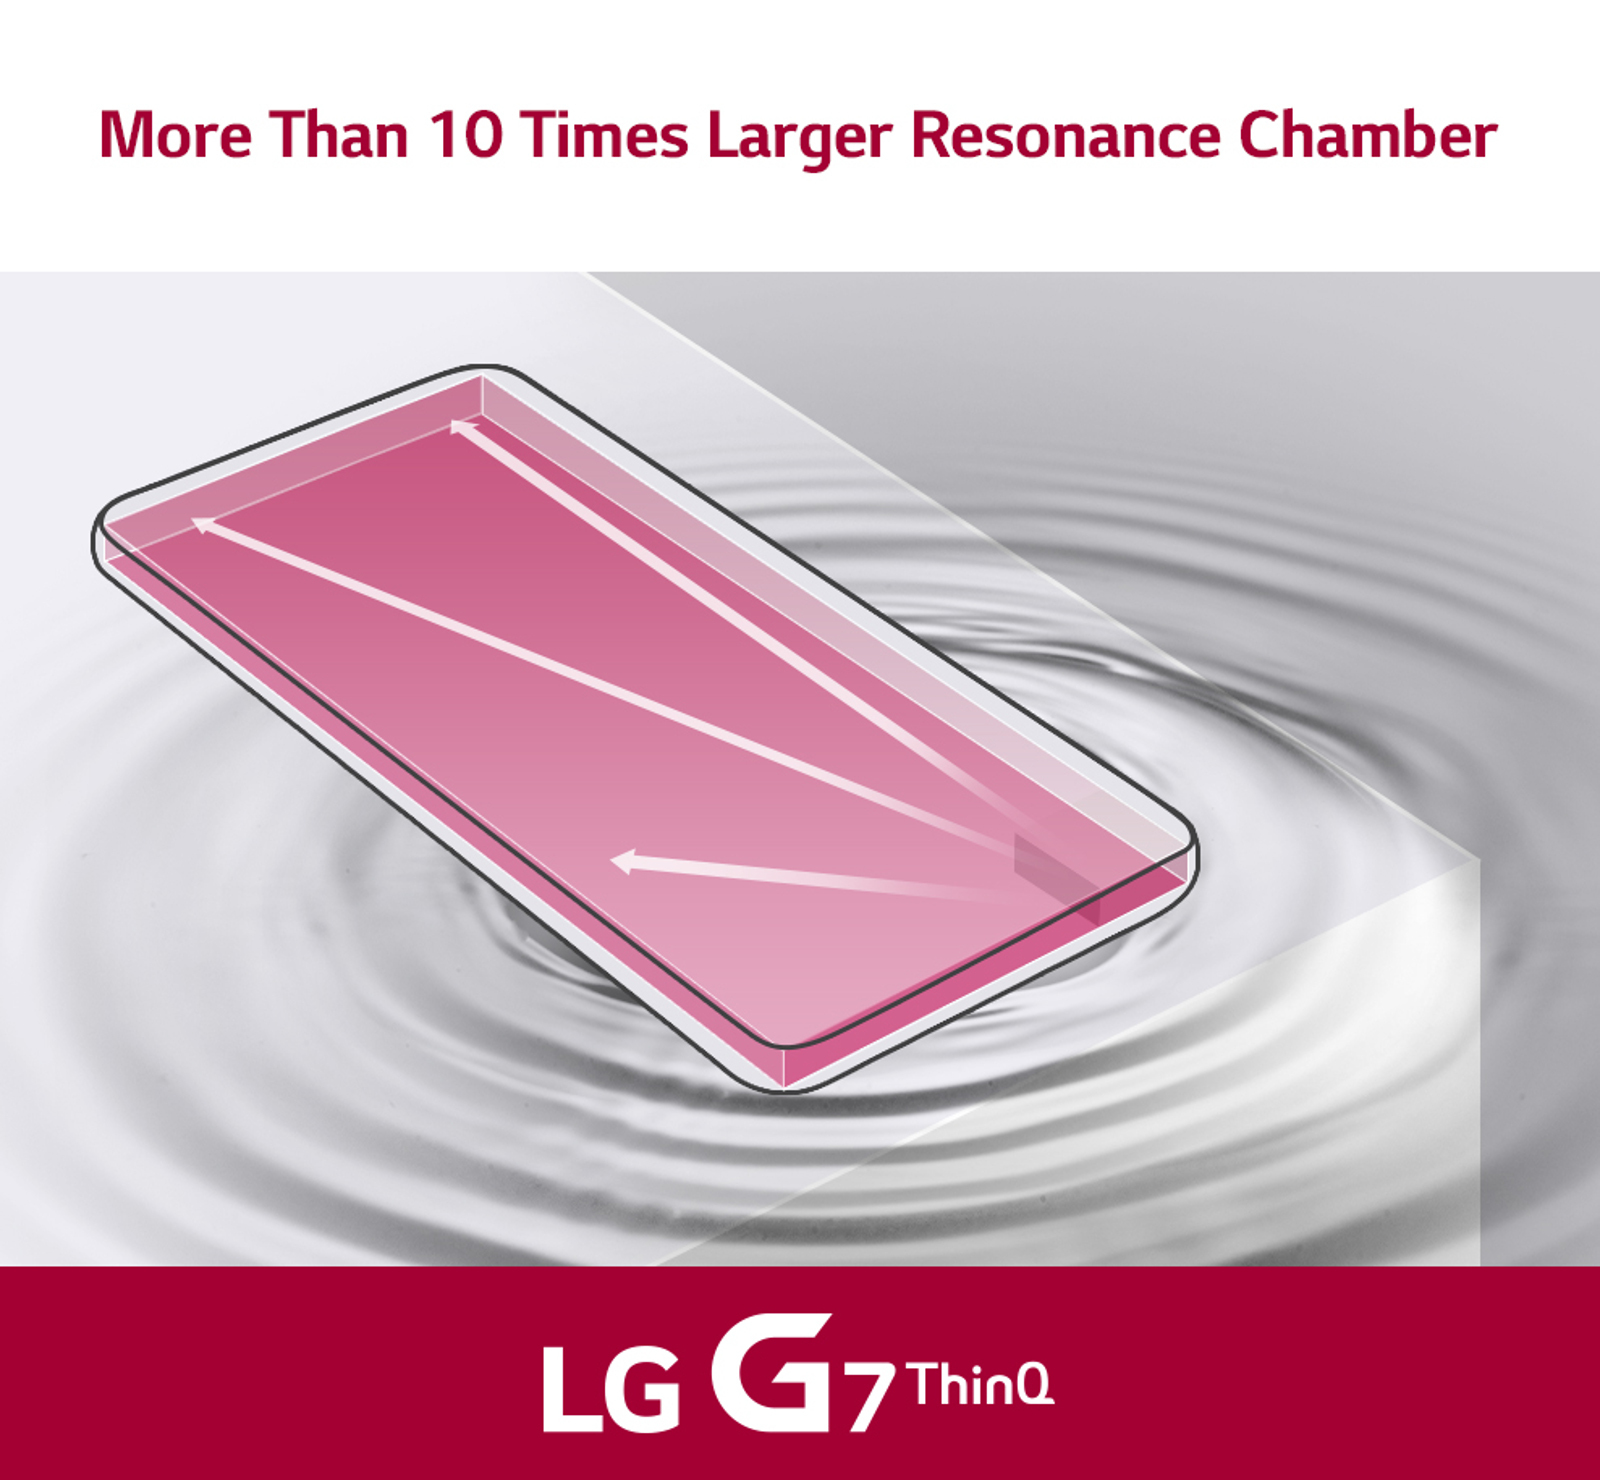 Dźwięk rezonansowy w pomieszczeniu LG G7